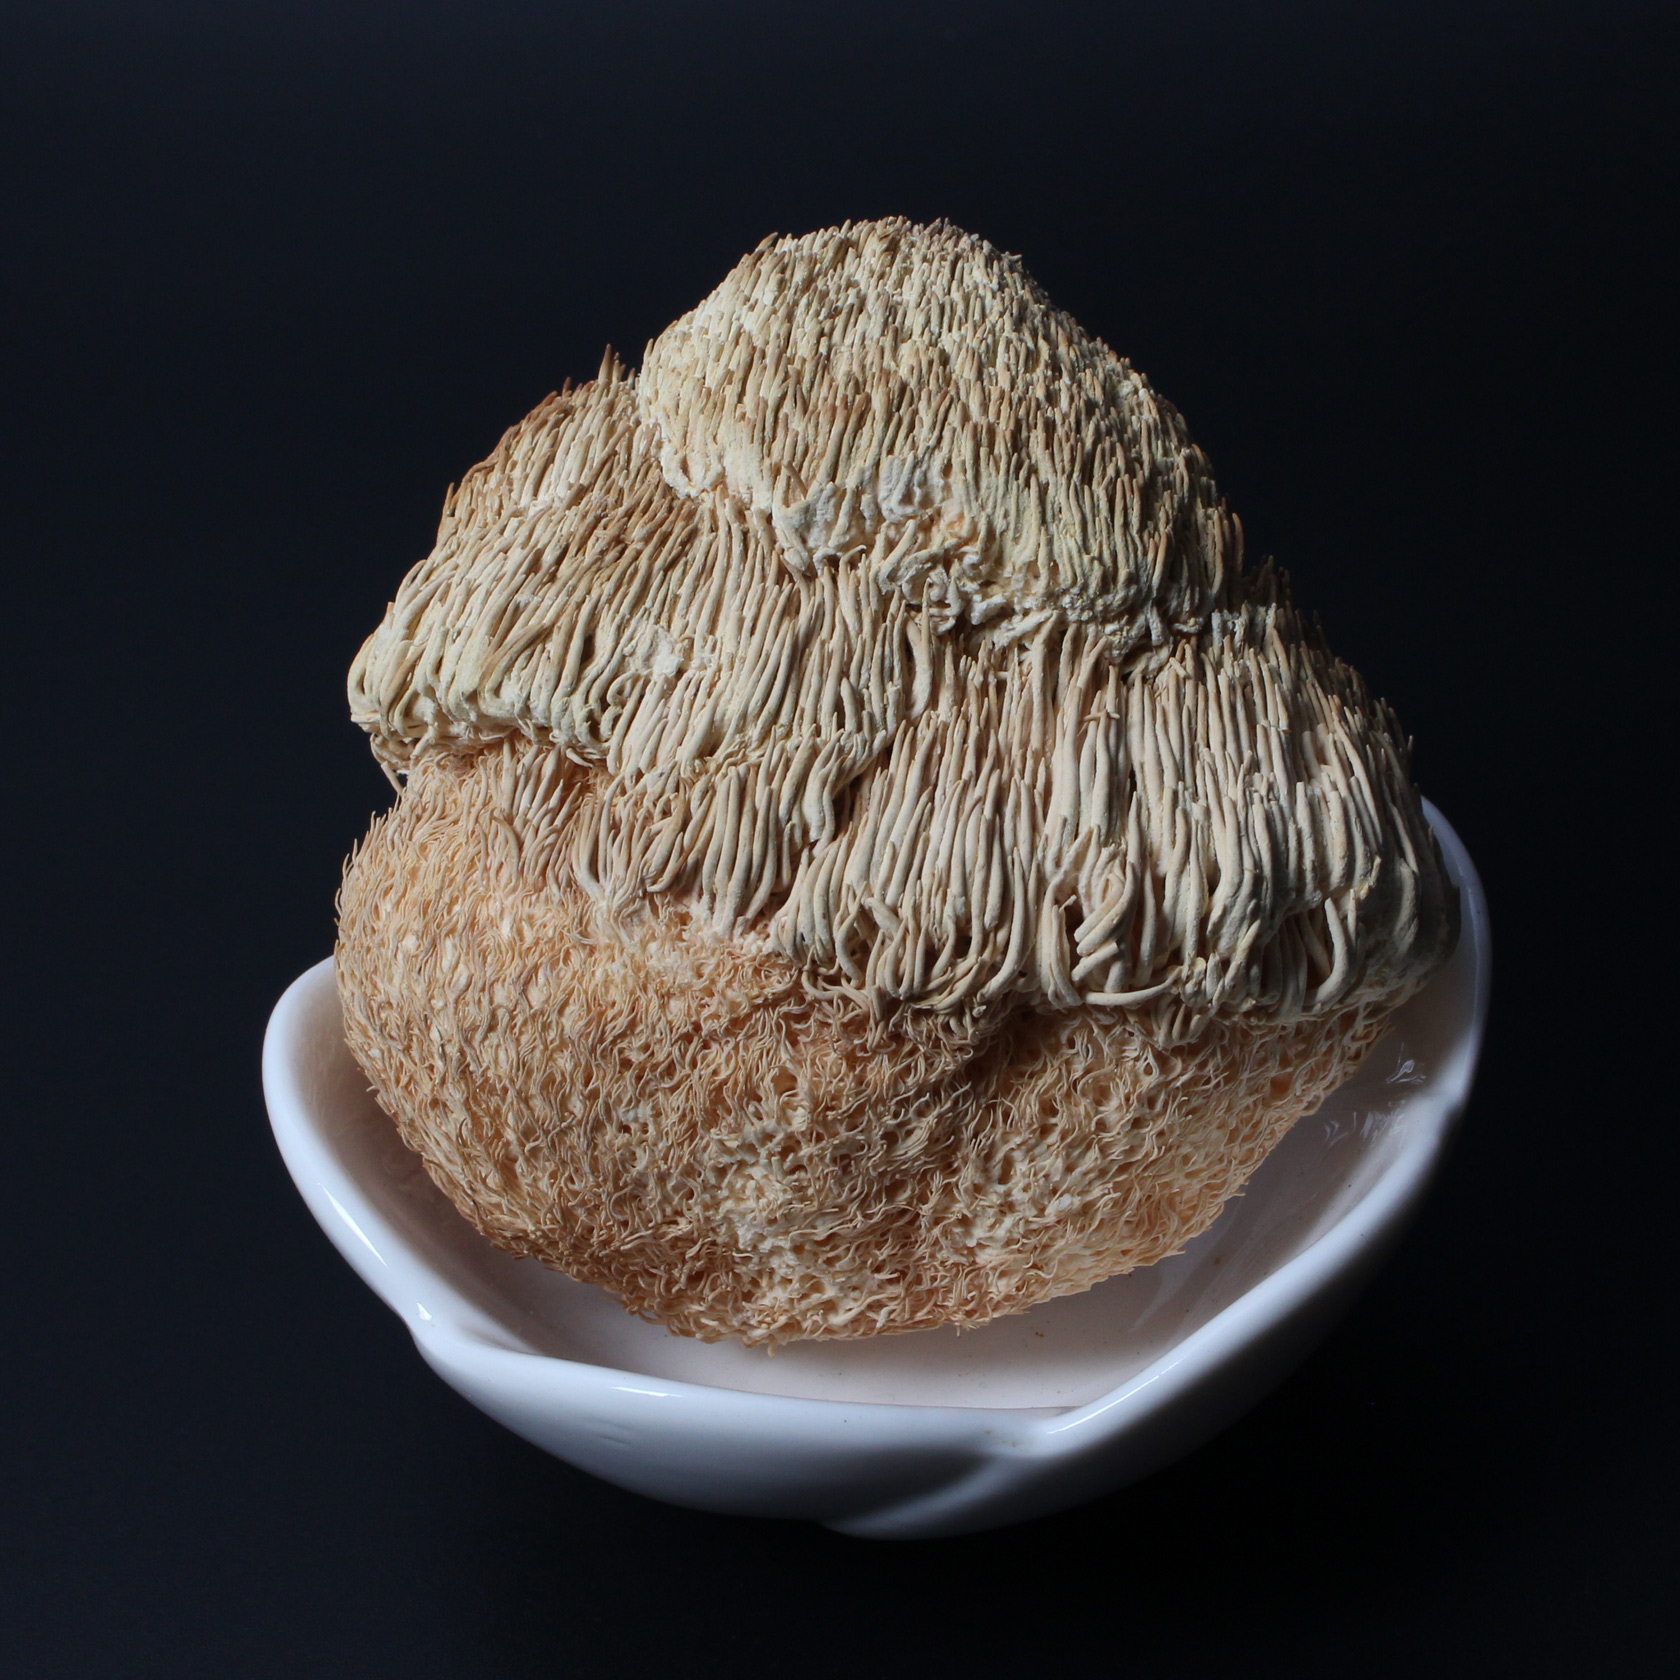 黑龙江省 海林市 猴头菇  口感鲜嫩 猴头菌 干货 35元250g  包邮折扣优惠信息